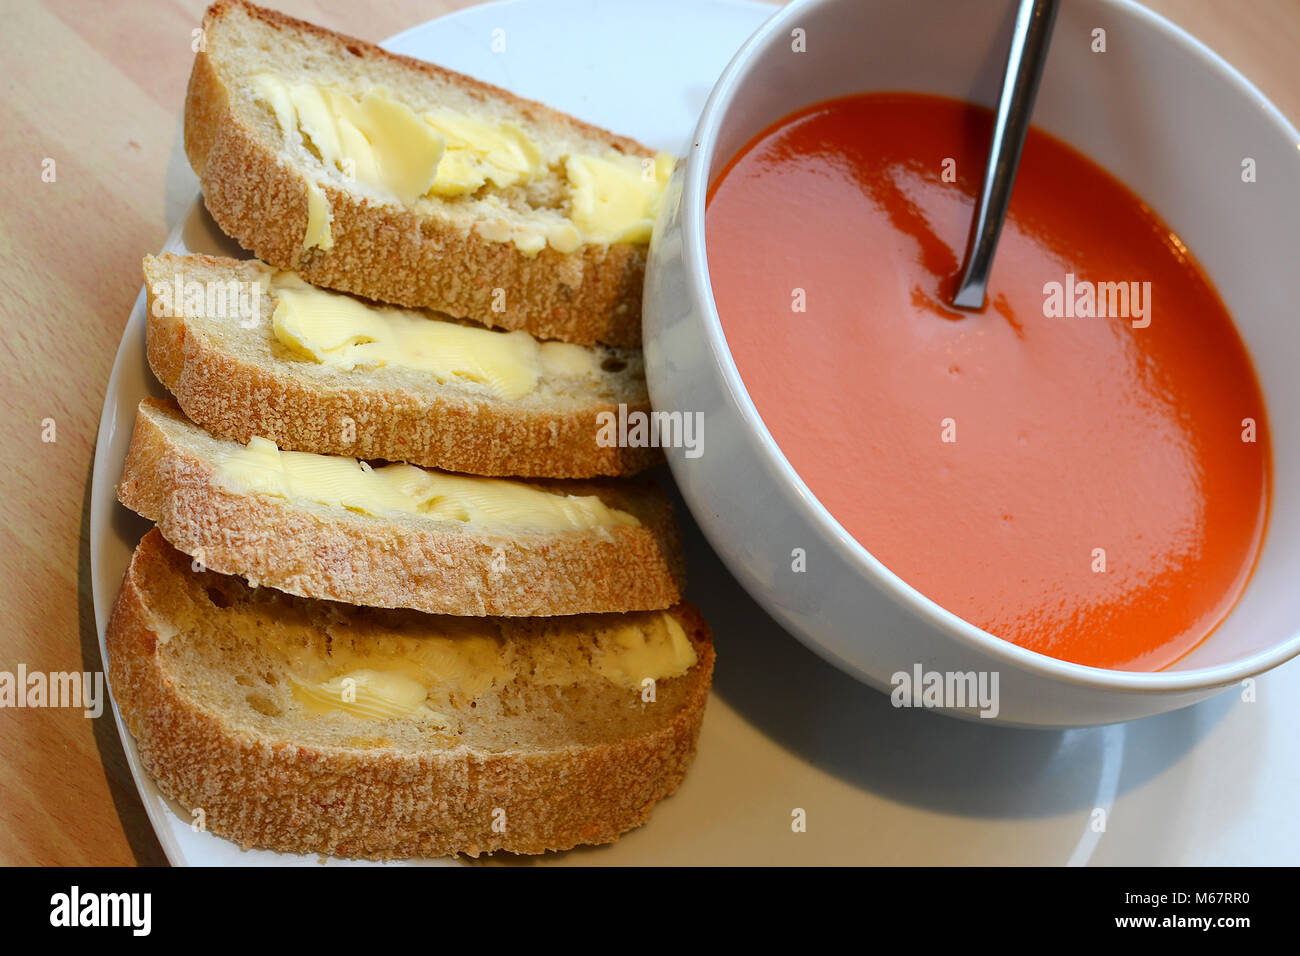 Soupe de tomate avec du pain rustique Banque D'Images